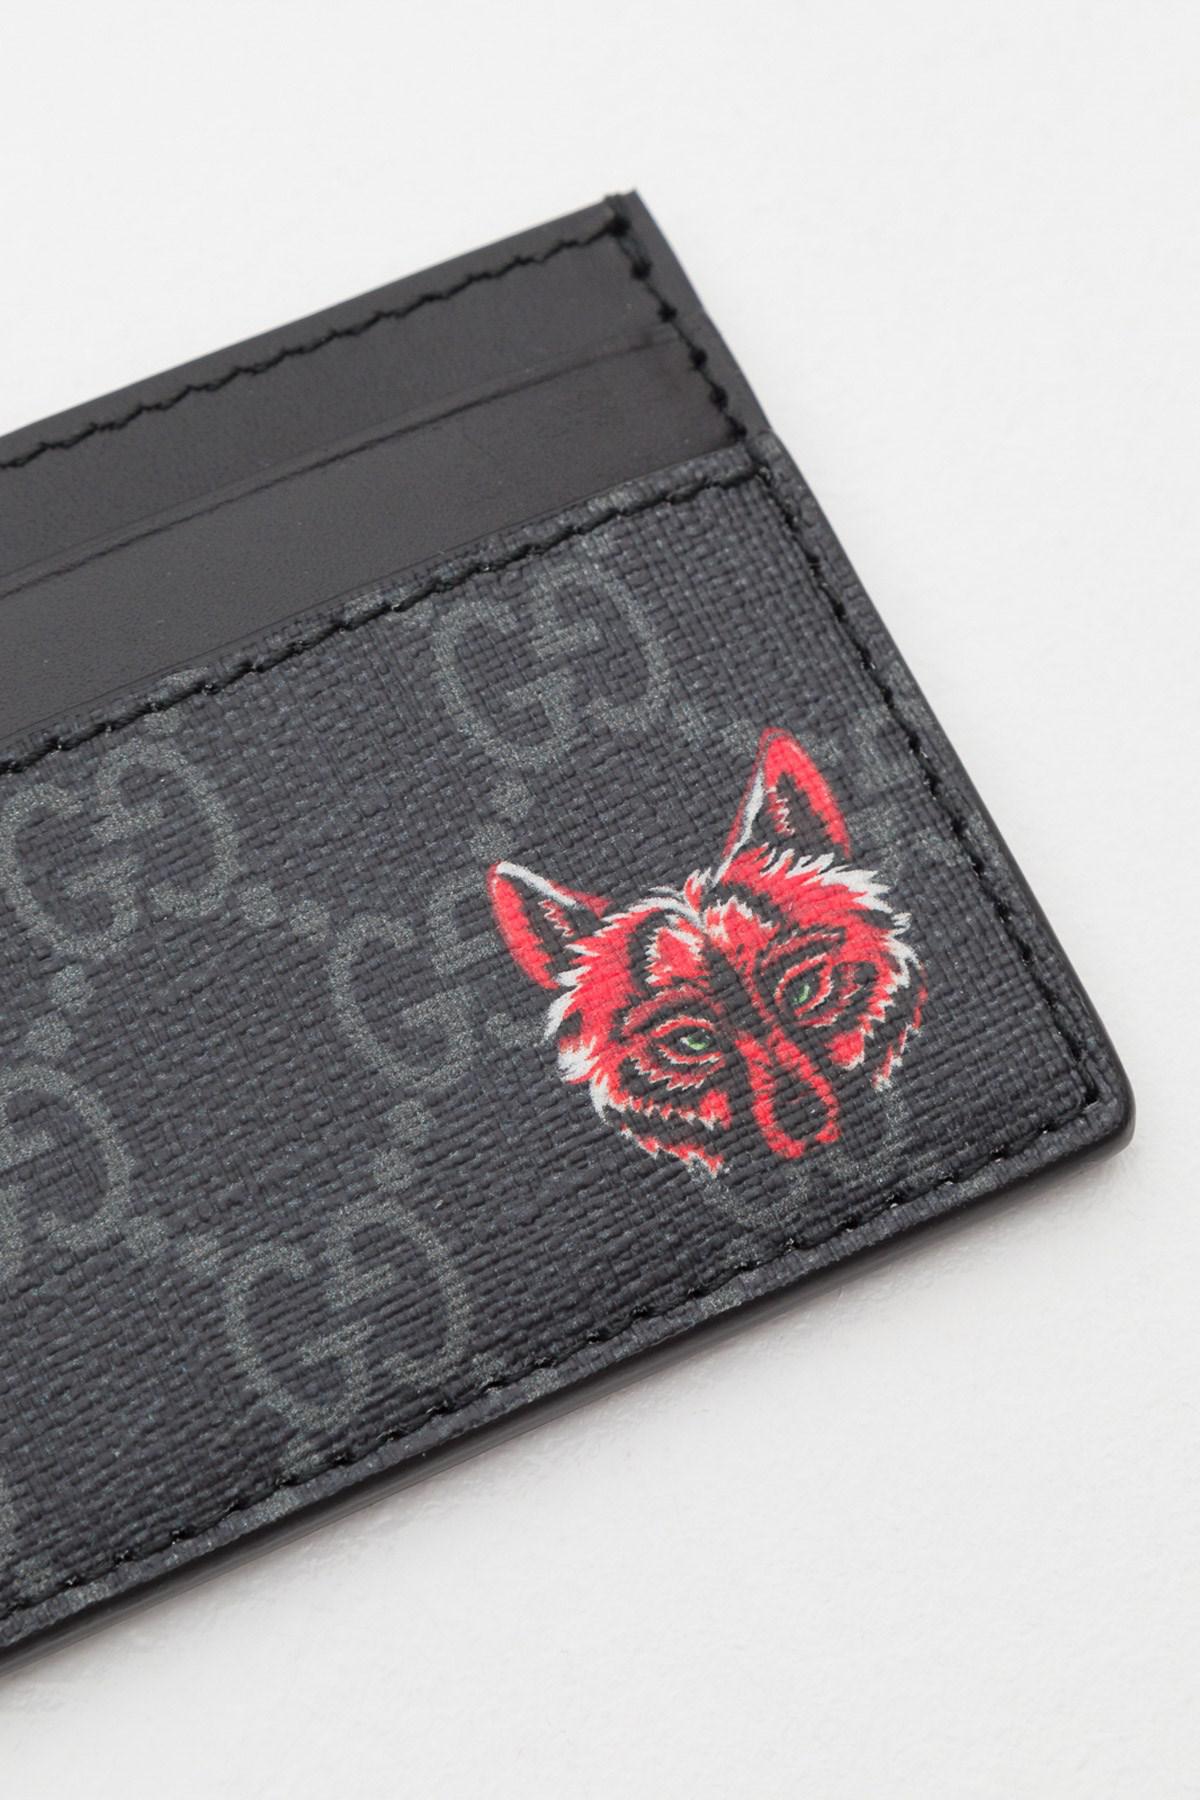 fox gucci wallet